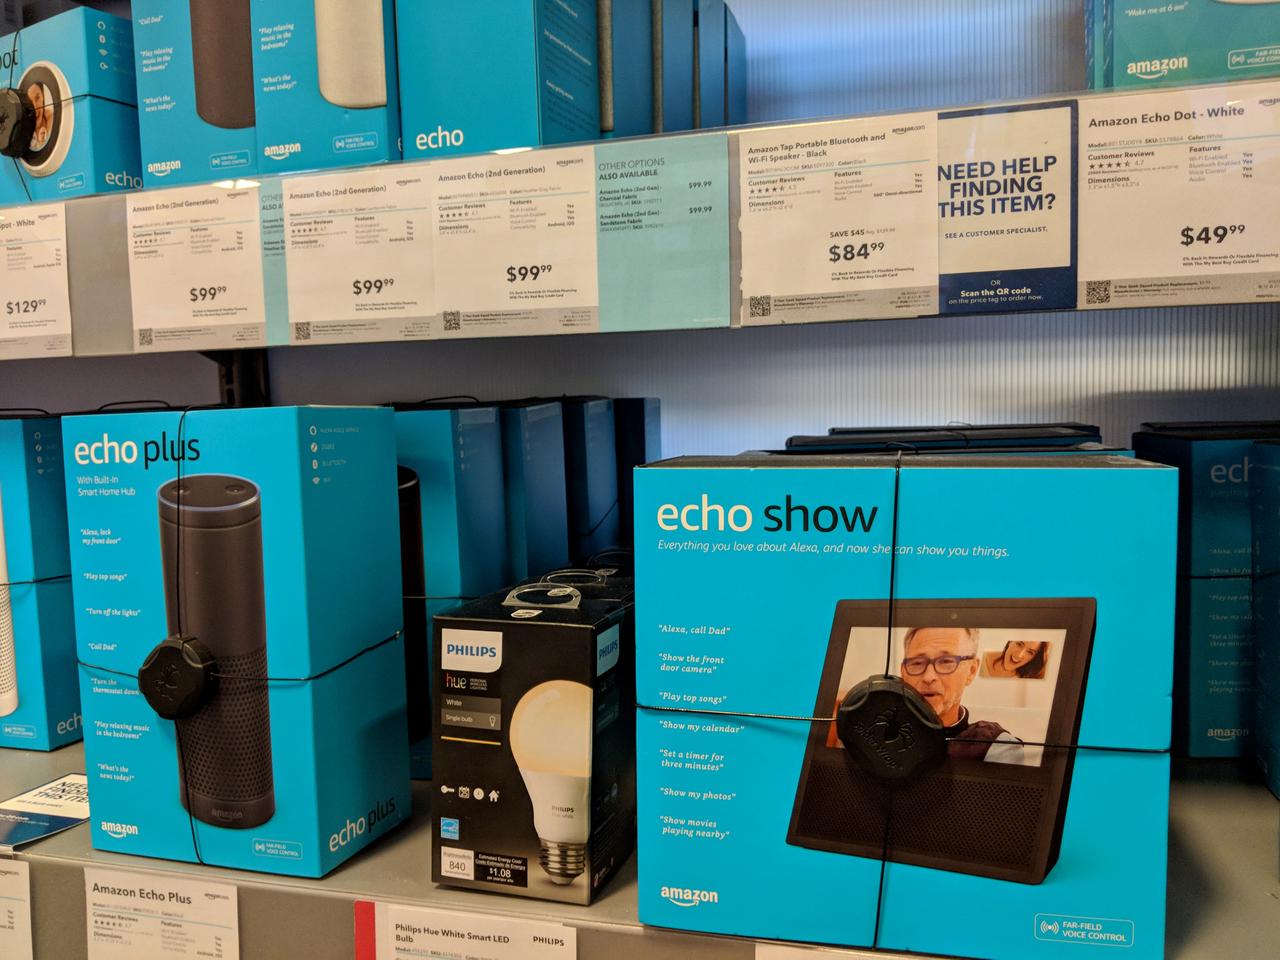 Microsoftの店舗で｢Amazon Echo｣が売っているらしい…